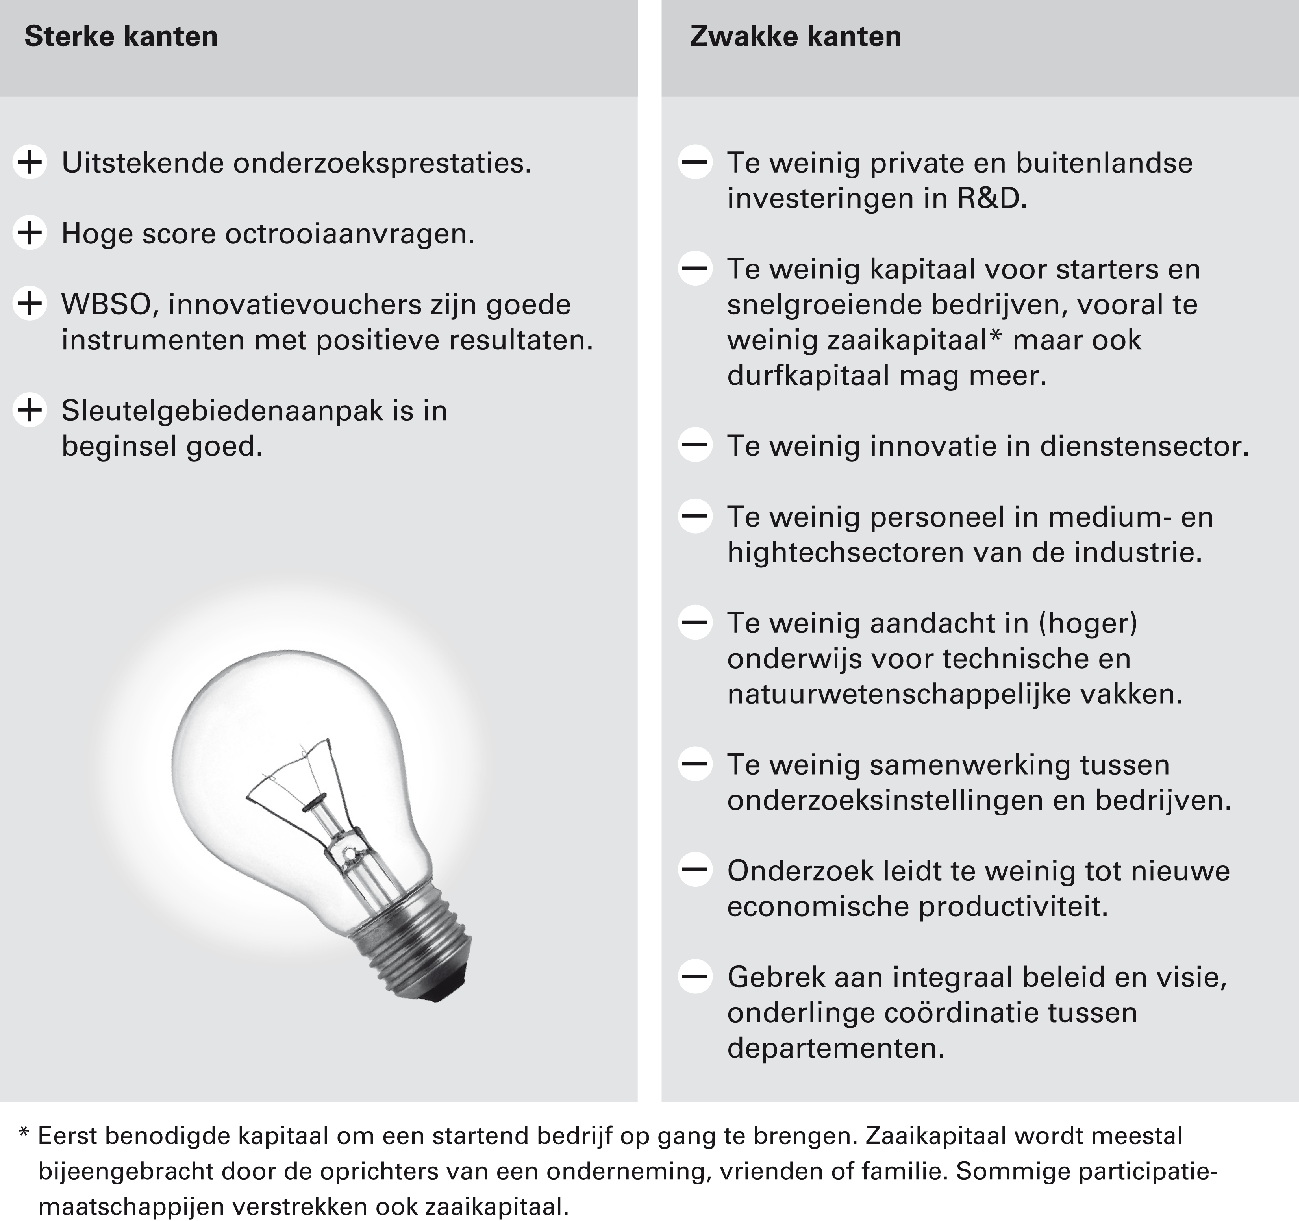 Tabel 6 Sterke en zwakke kanten inovatie in Nederland